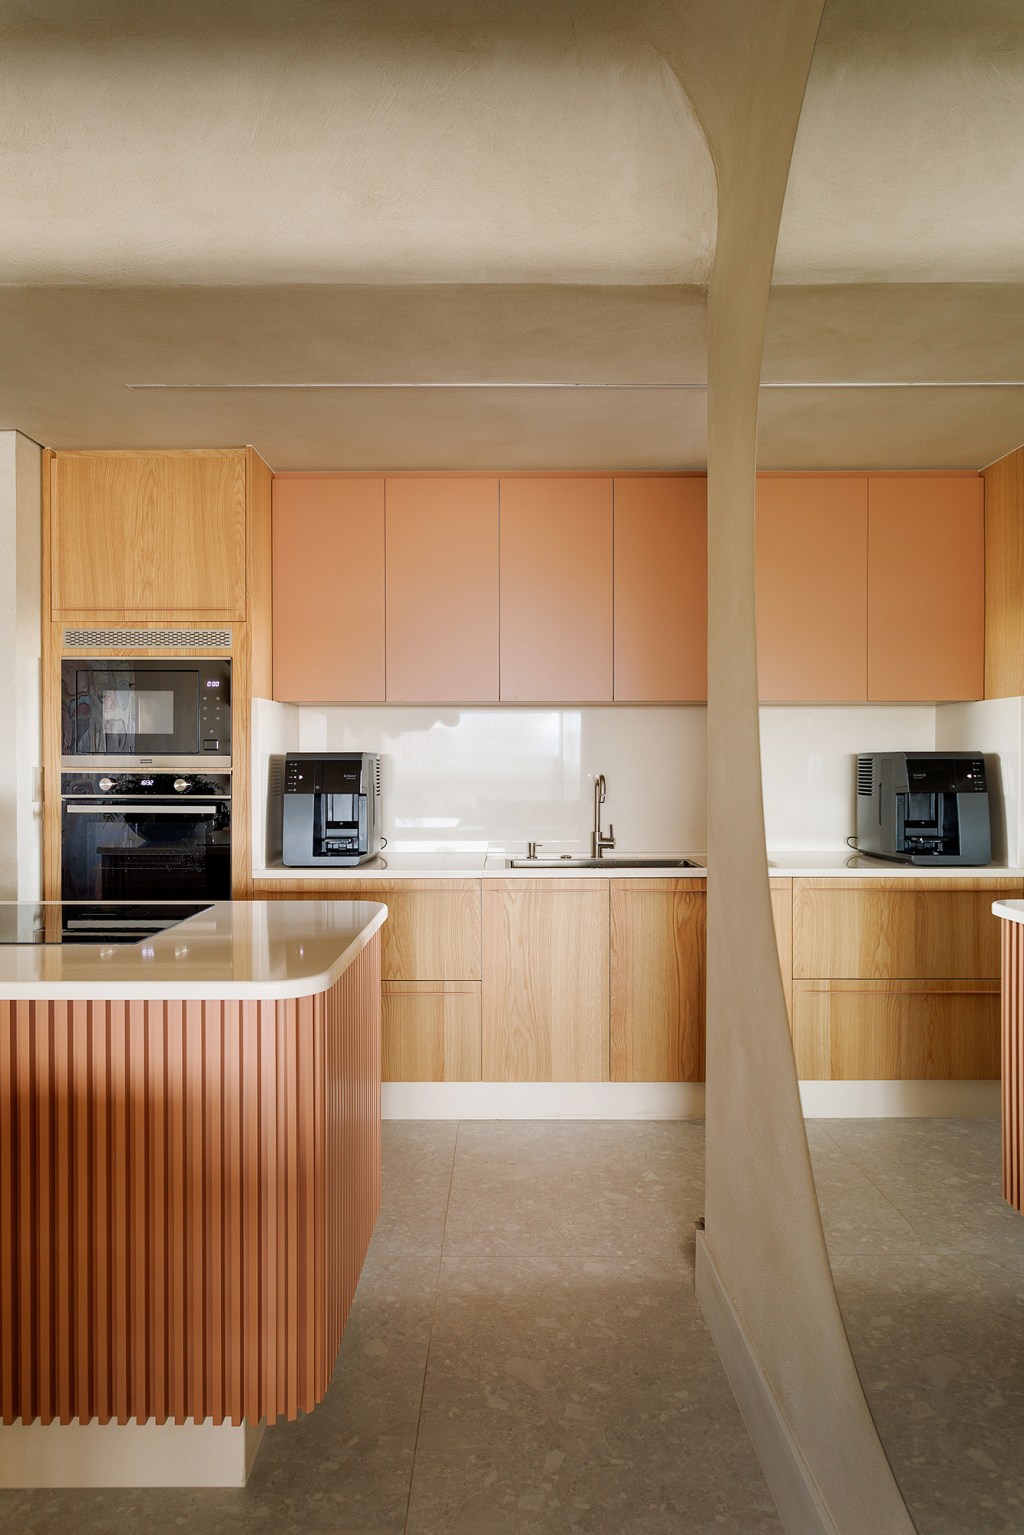 Apê 130 m2 ar mediterrâneo formas orgânicas Gustavo Marasca cozinha ilha armario espelho